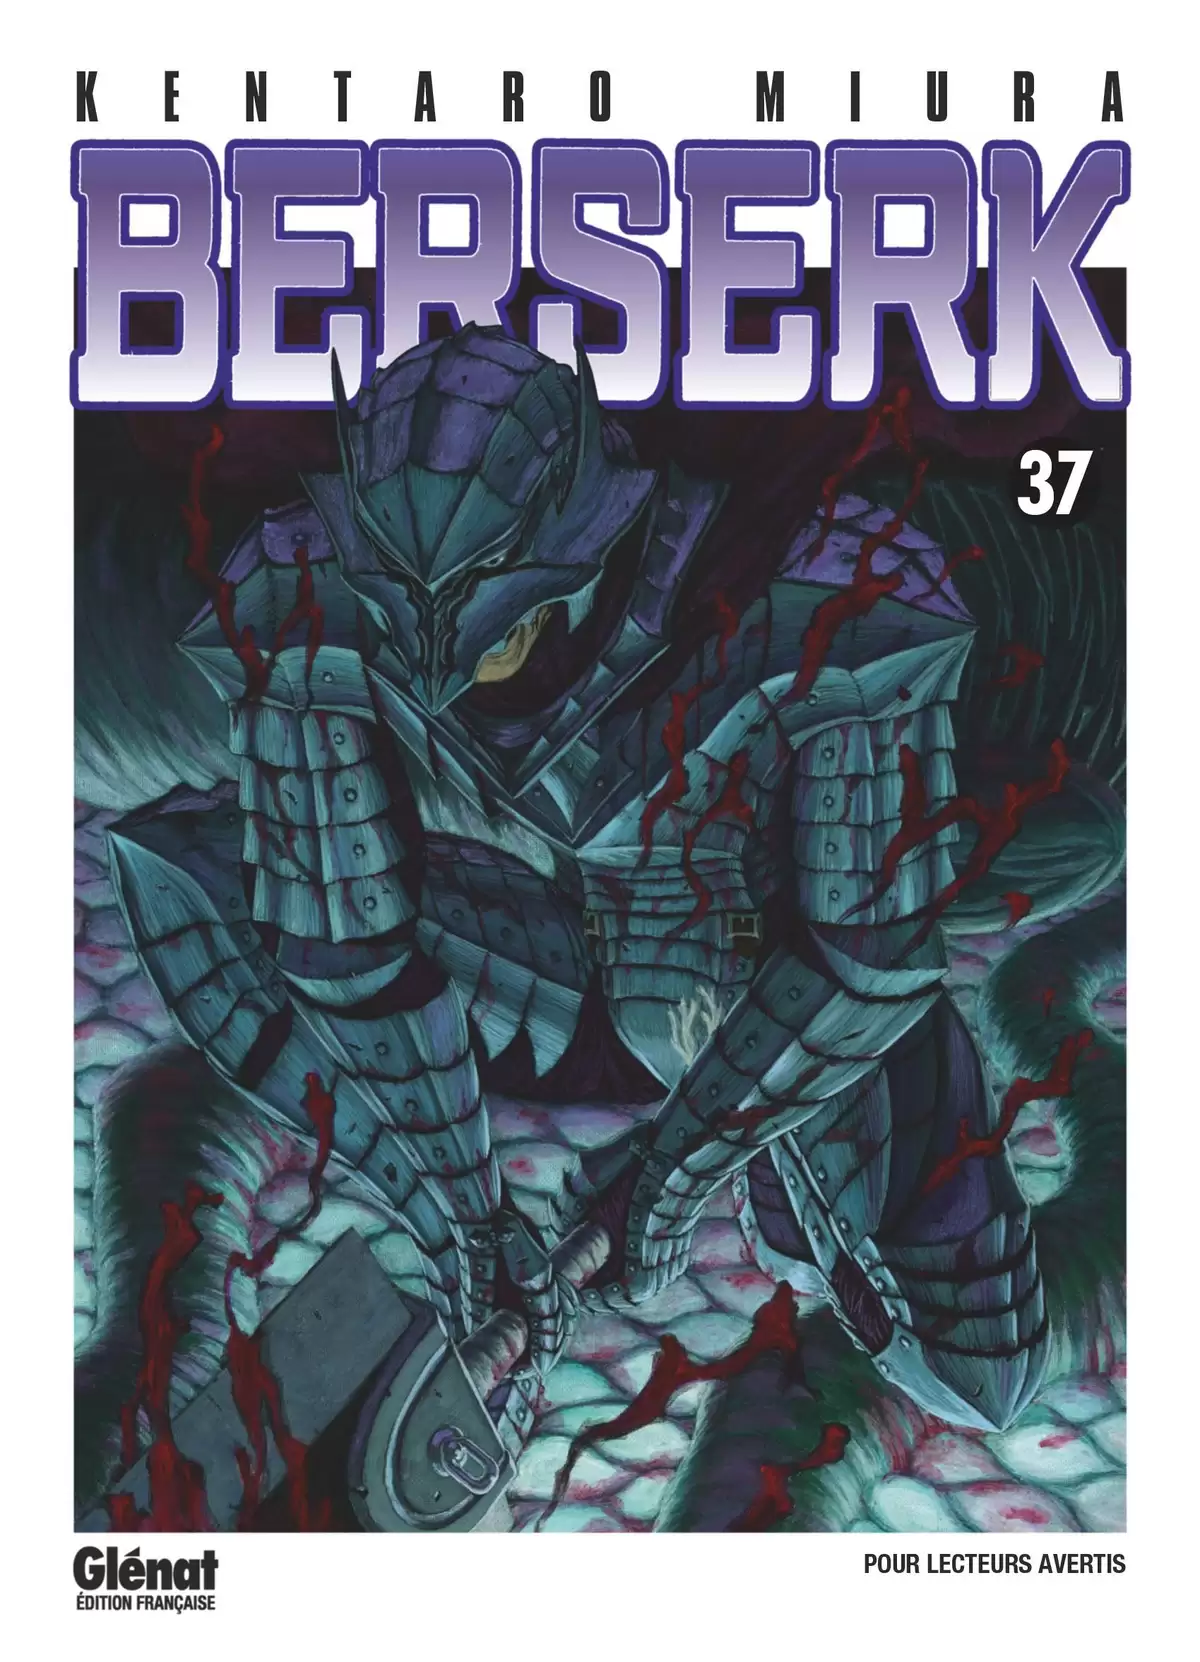 Berserk Volume 37 page 1